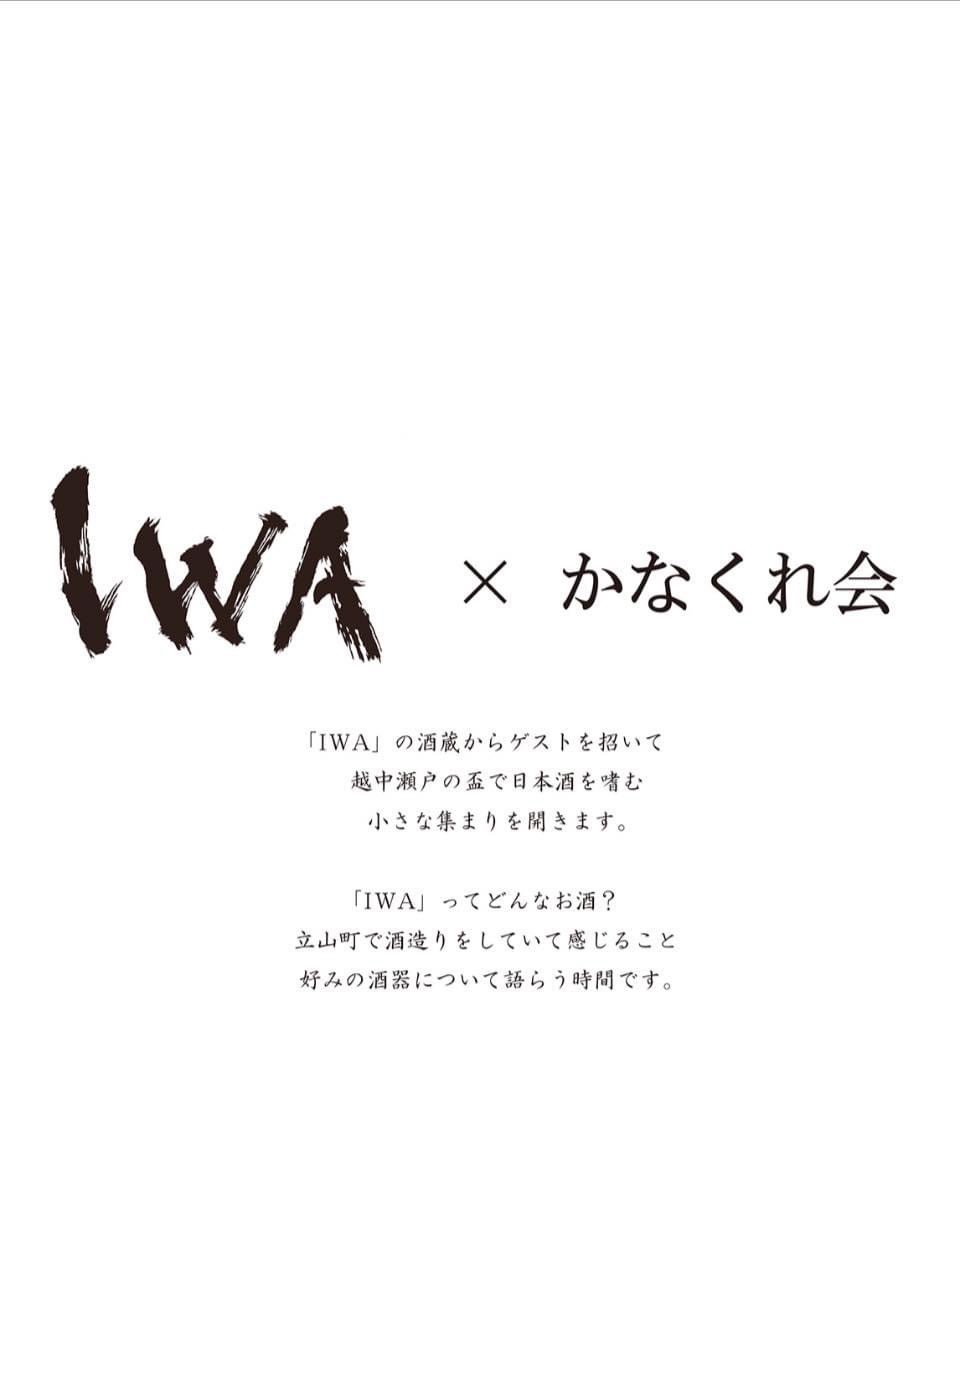 IWA x かなくれ会　のお知らせ。_b0231845_10324837.jpeg